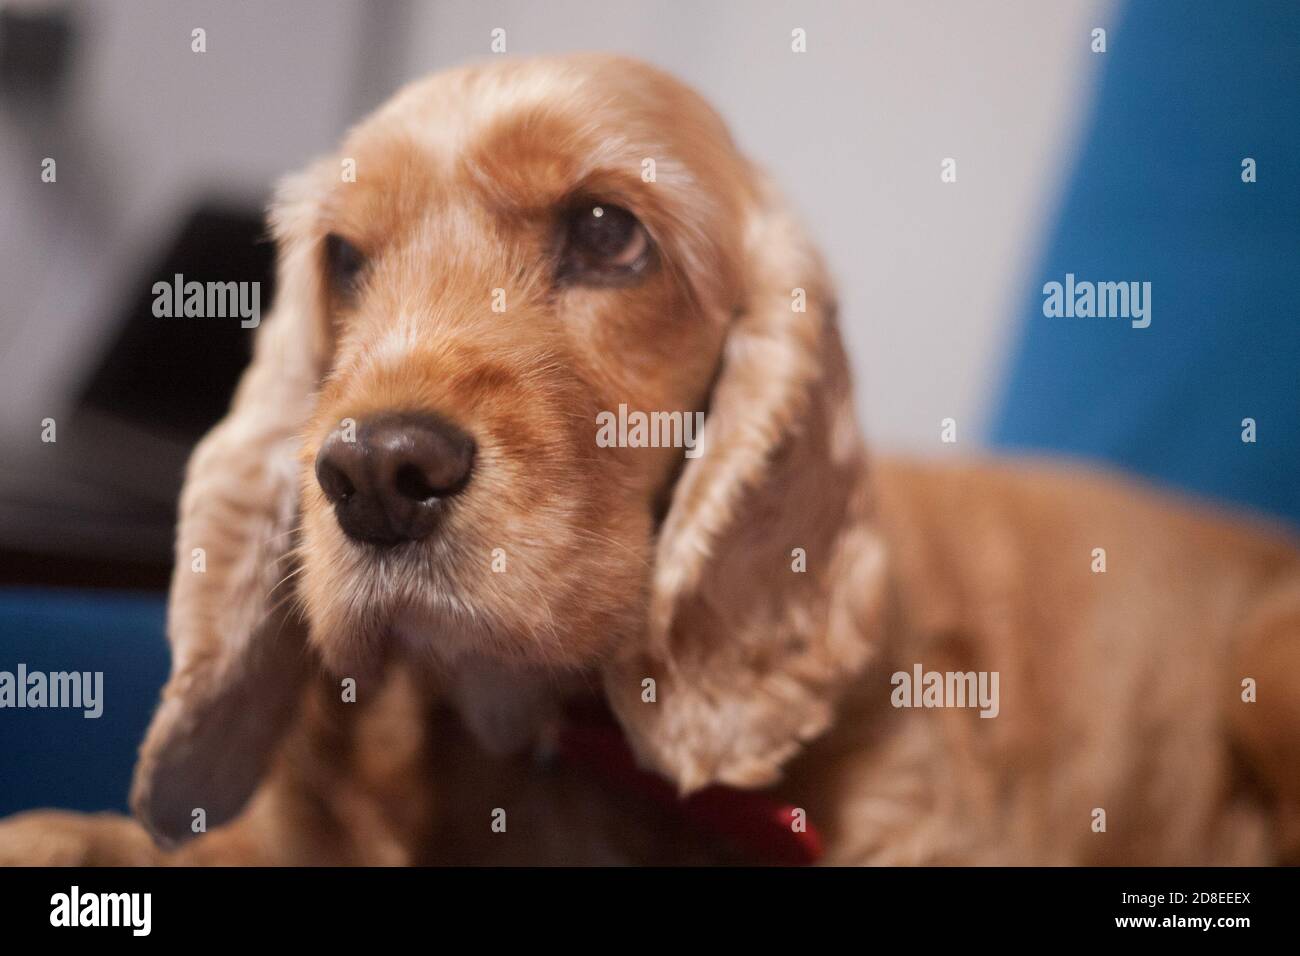 Carino cane spaniel animale domestico in un ambiente accogliente casa. Un aspetto triste di un puppy peloso. Ritratto in primo piano spaniel inglese rosso chiaro. Foto Stock